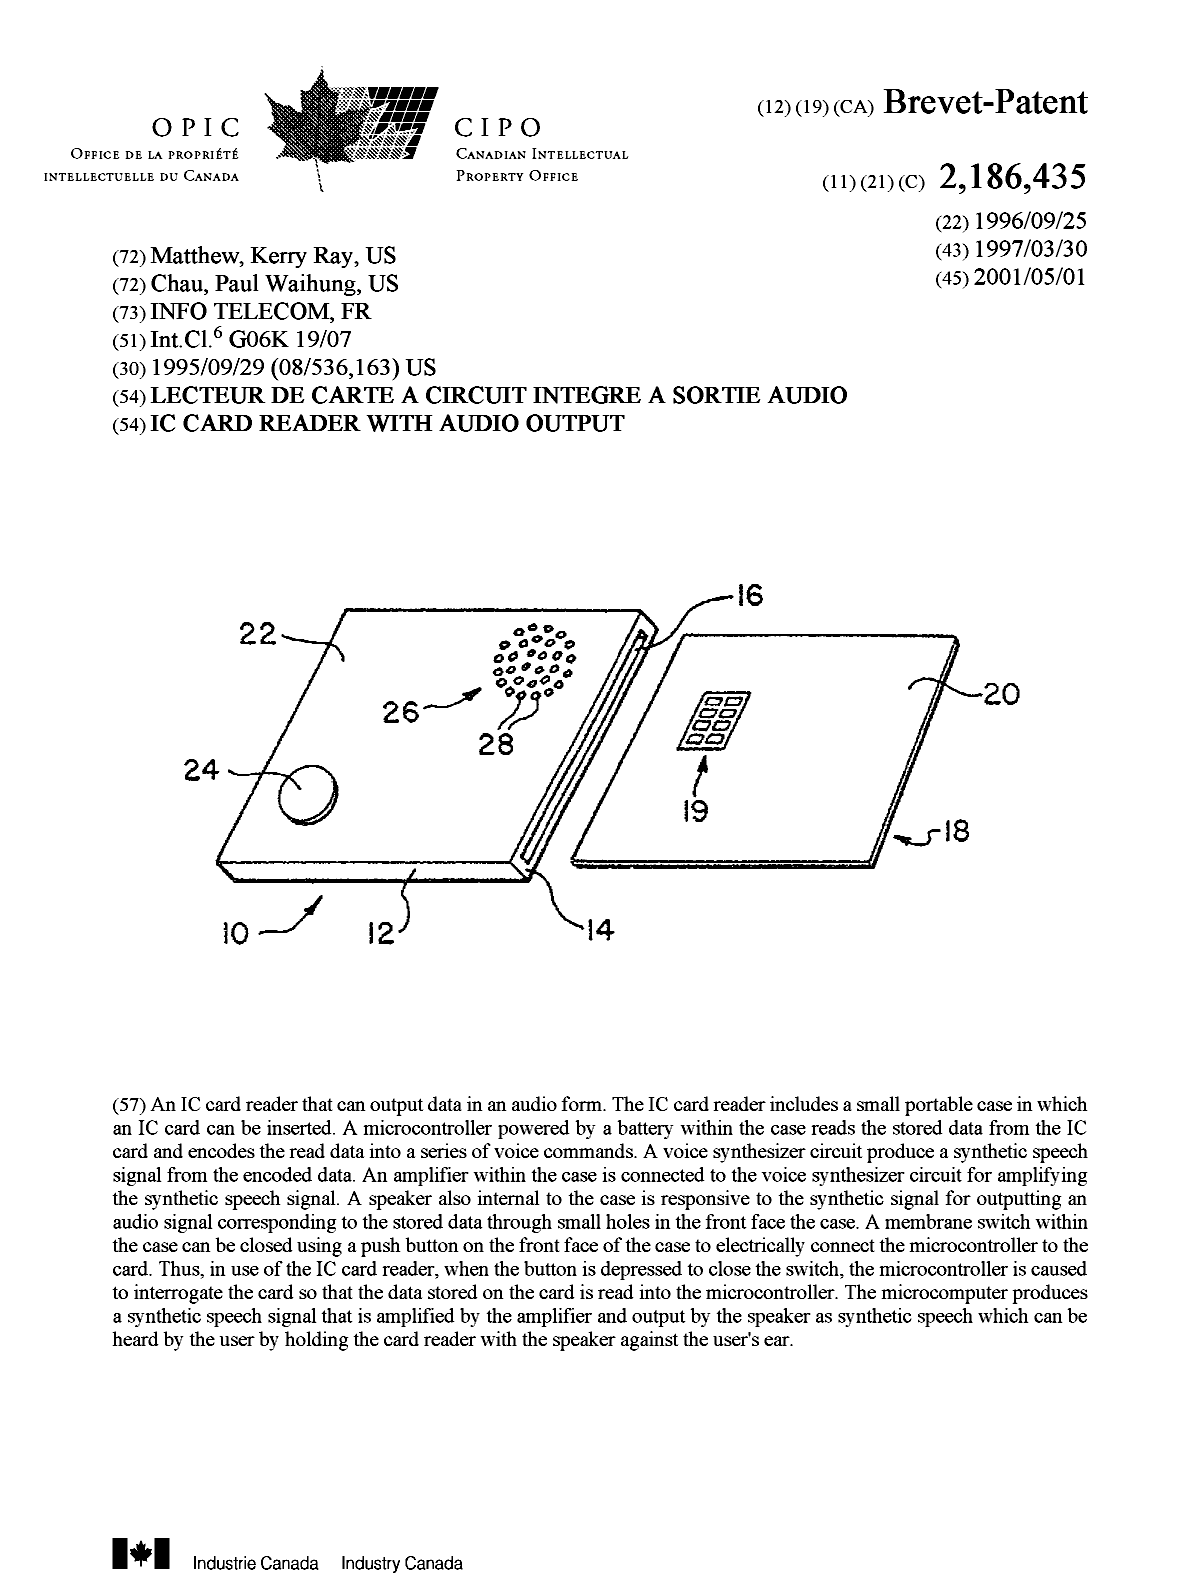 Document de brevet canadien 2186435. Page couverture 20010406. Image 1 de 1